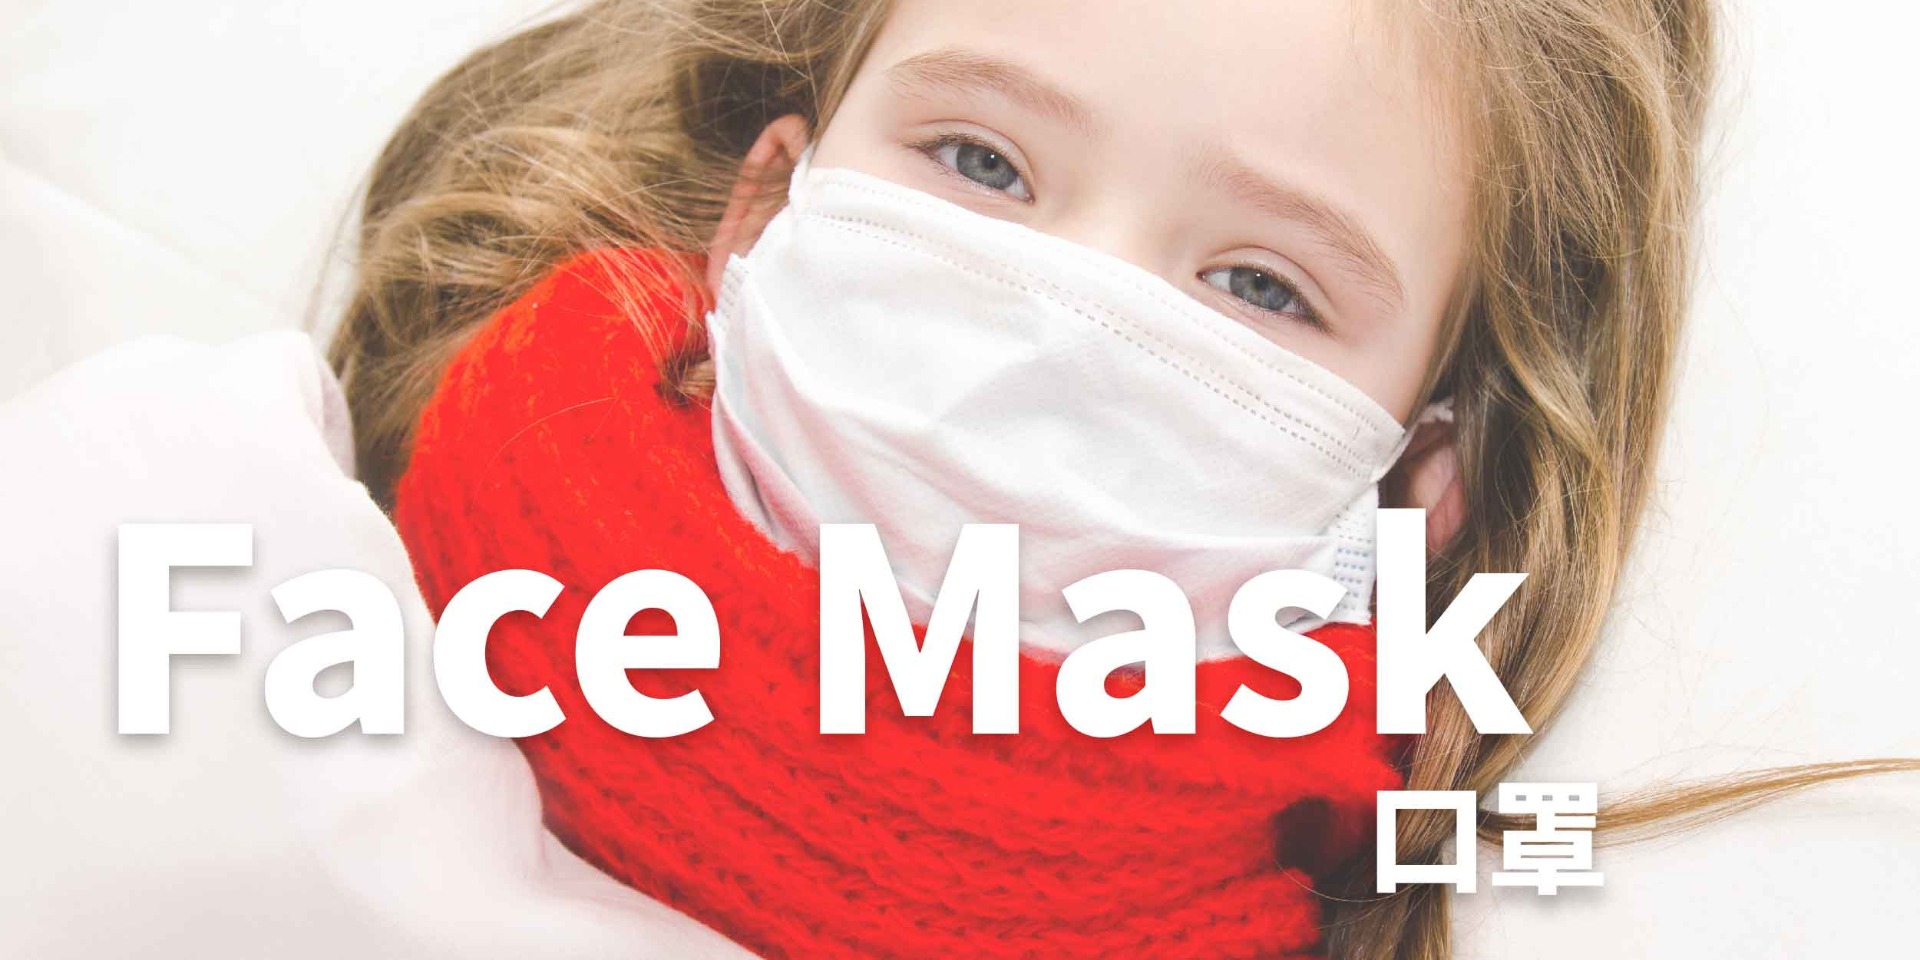 口罩,AQ Bio消毒殺菌噴霧、殺菌達99.9999%, 對抗濕疹,暗瘡,皮膚敏感,念珠菌,鼻敏感,喉嚨痛, 助皮膚修護細胞, 產生抗菌能